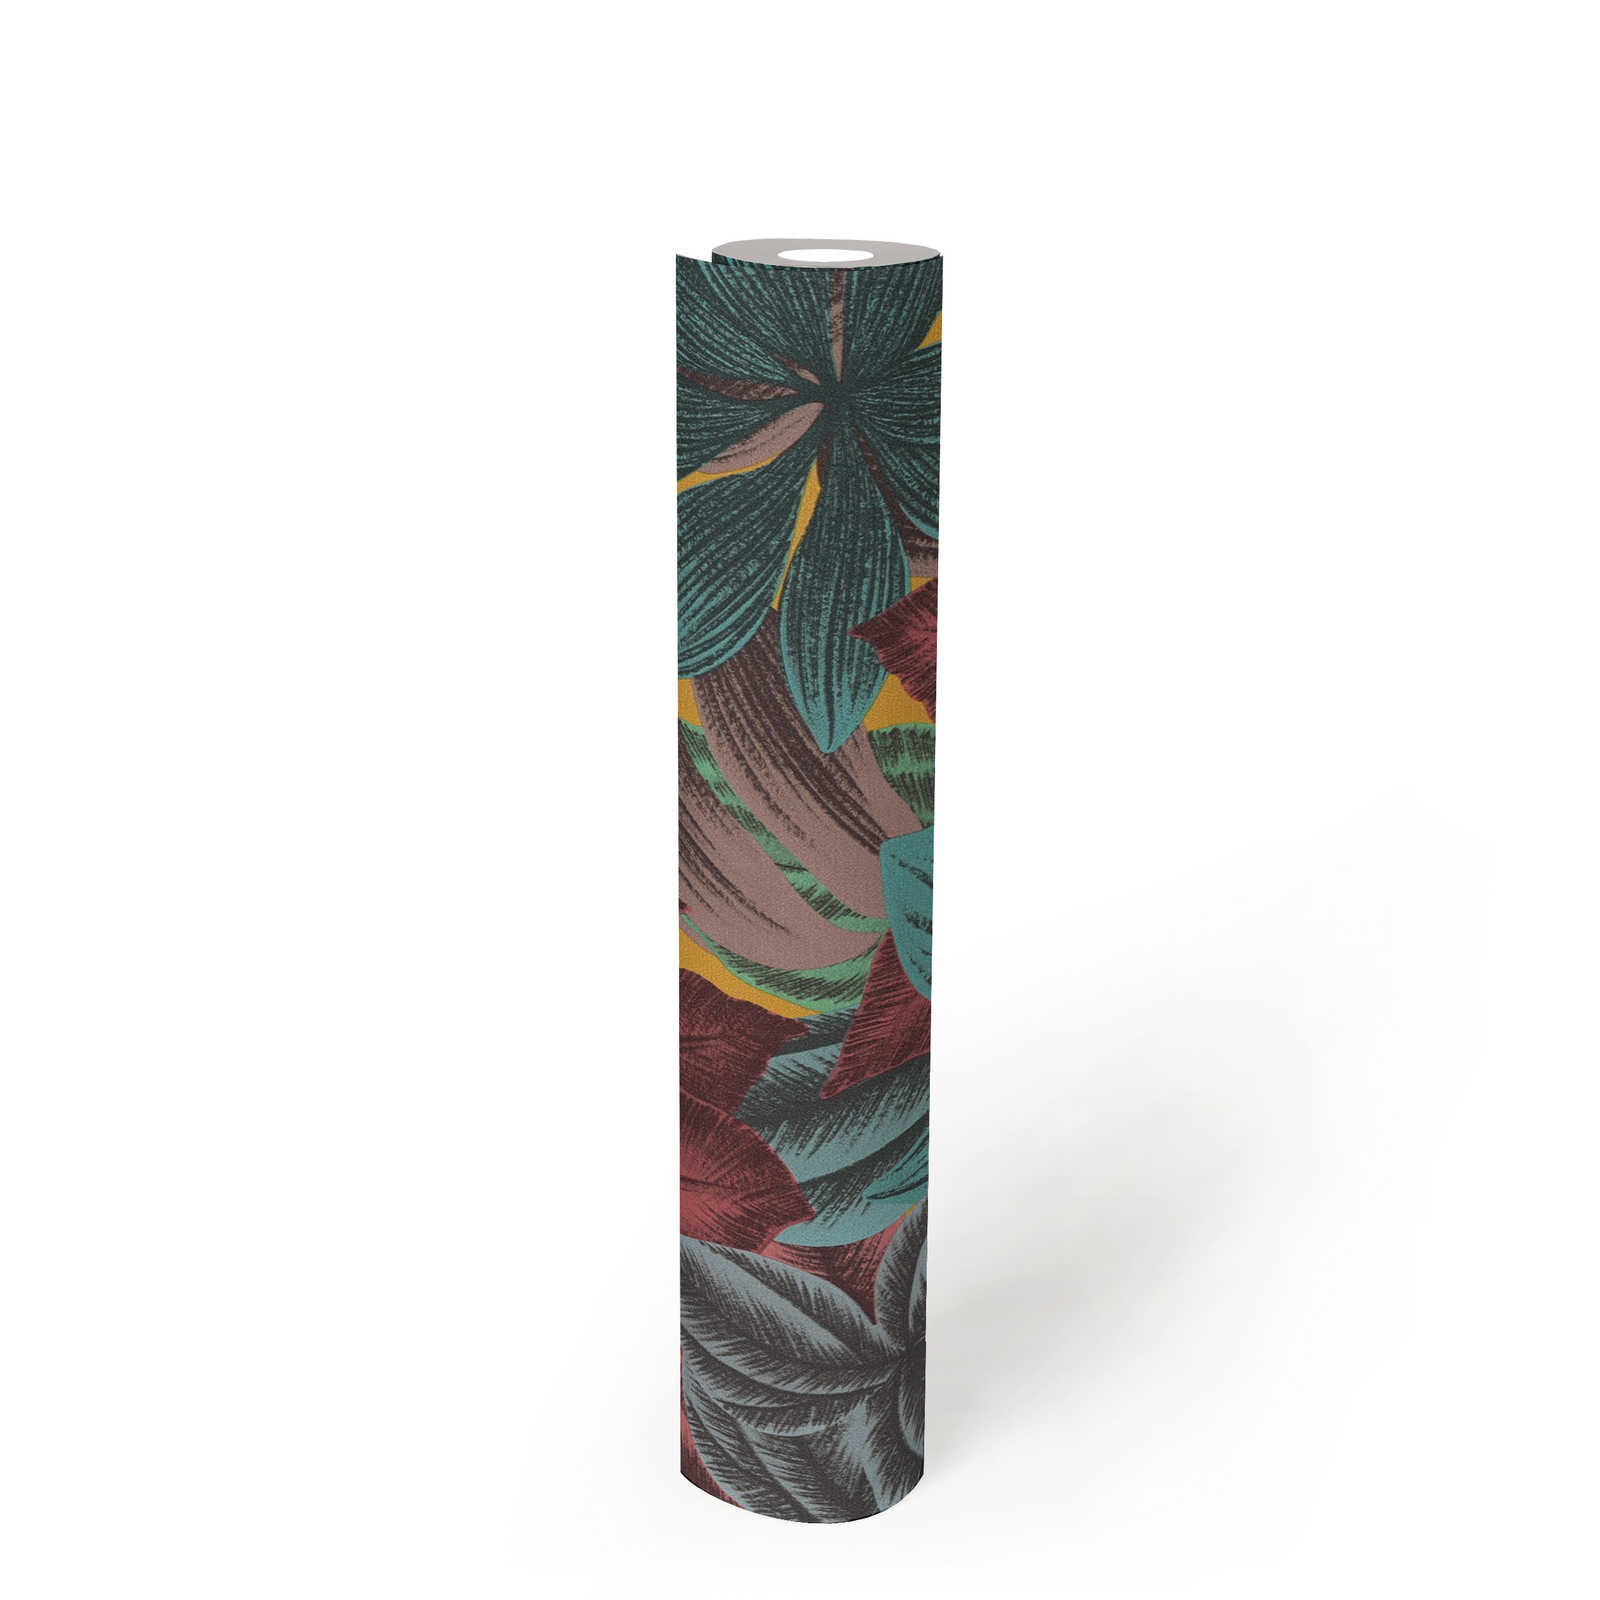             Vliestapete mit Blättermuster in bunten Farben – Bunt, Blau, Rosa
        